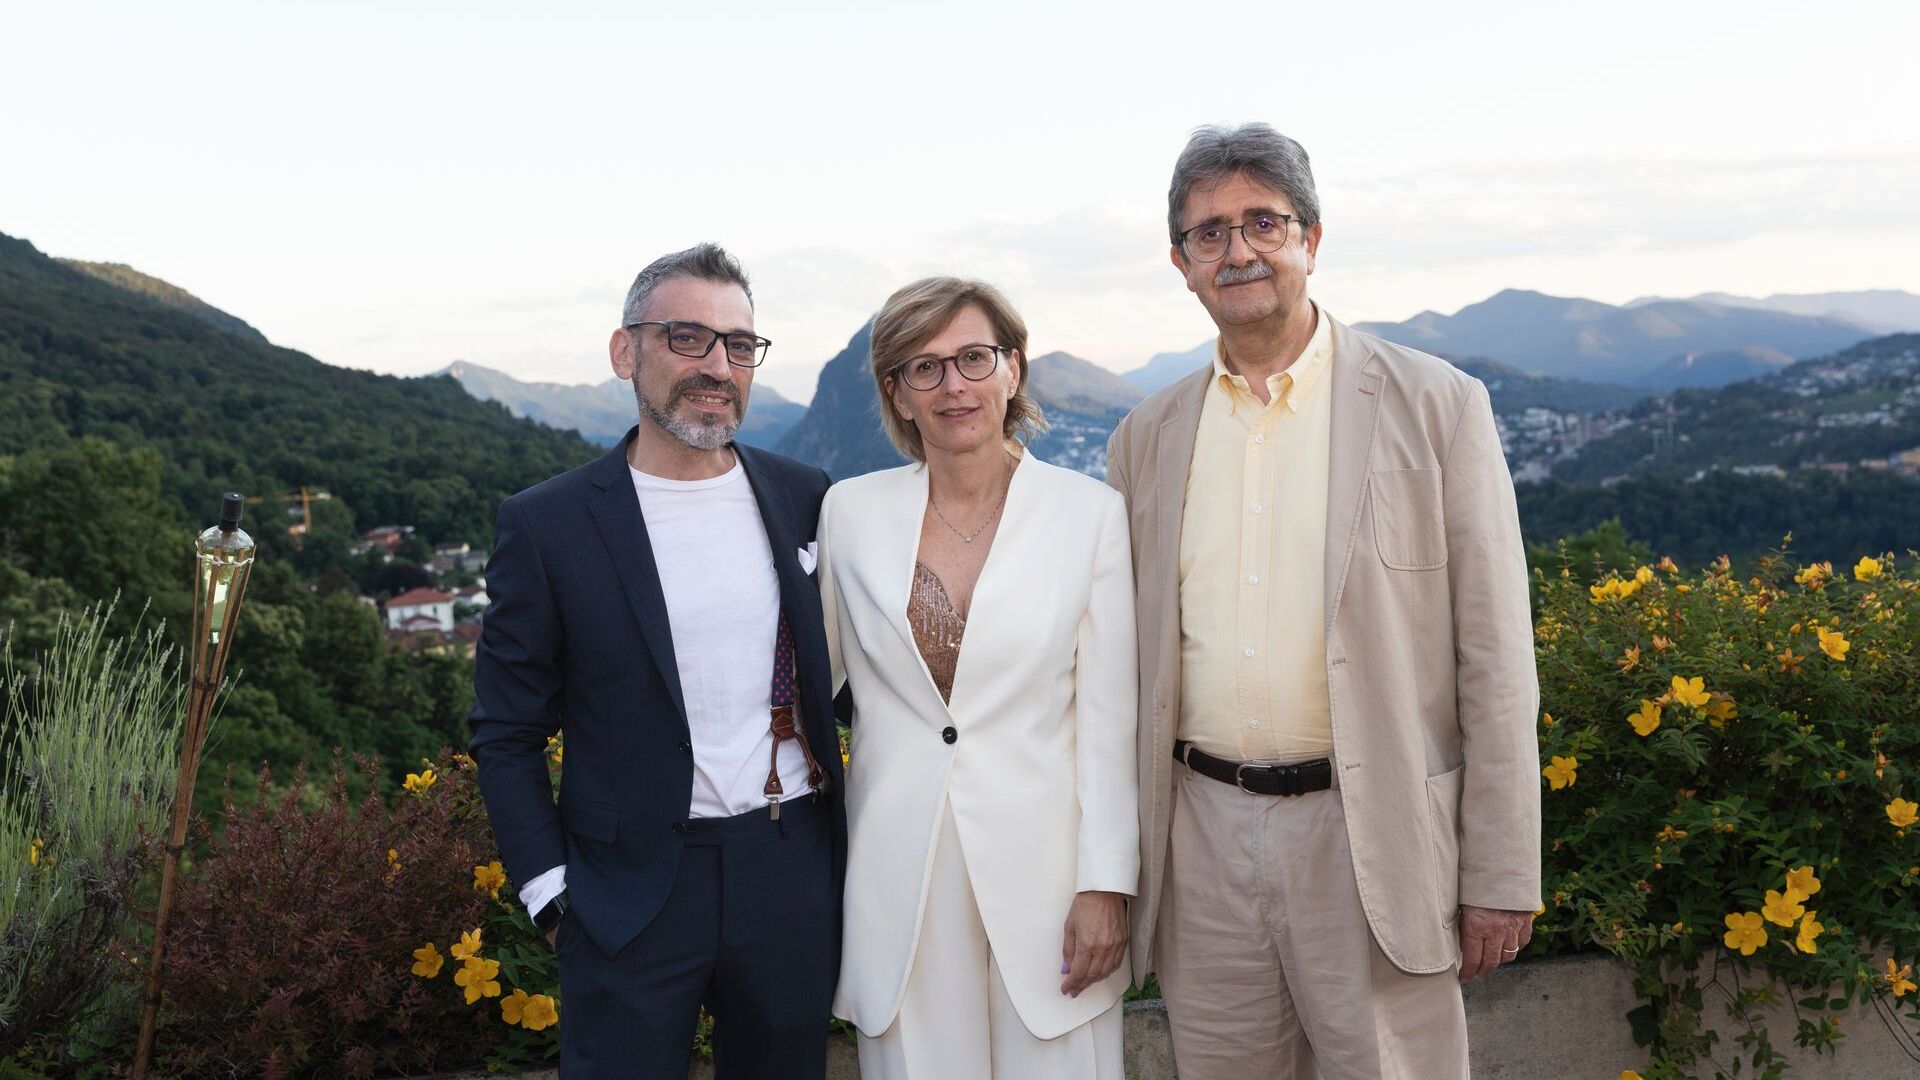 ルカ・マウリエッロとクリスティーナ・ジョット、パートナーのシルバノ・マリオーニとともに、それぞれated-ICT Ticinoの副社長と社長